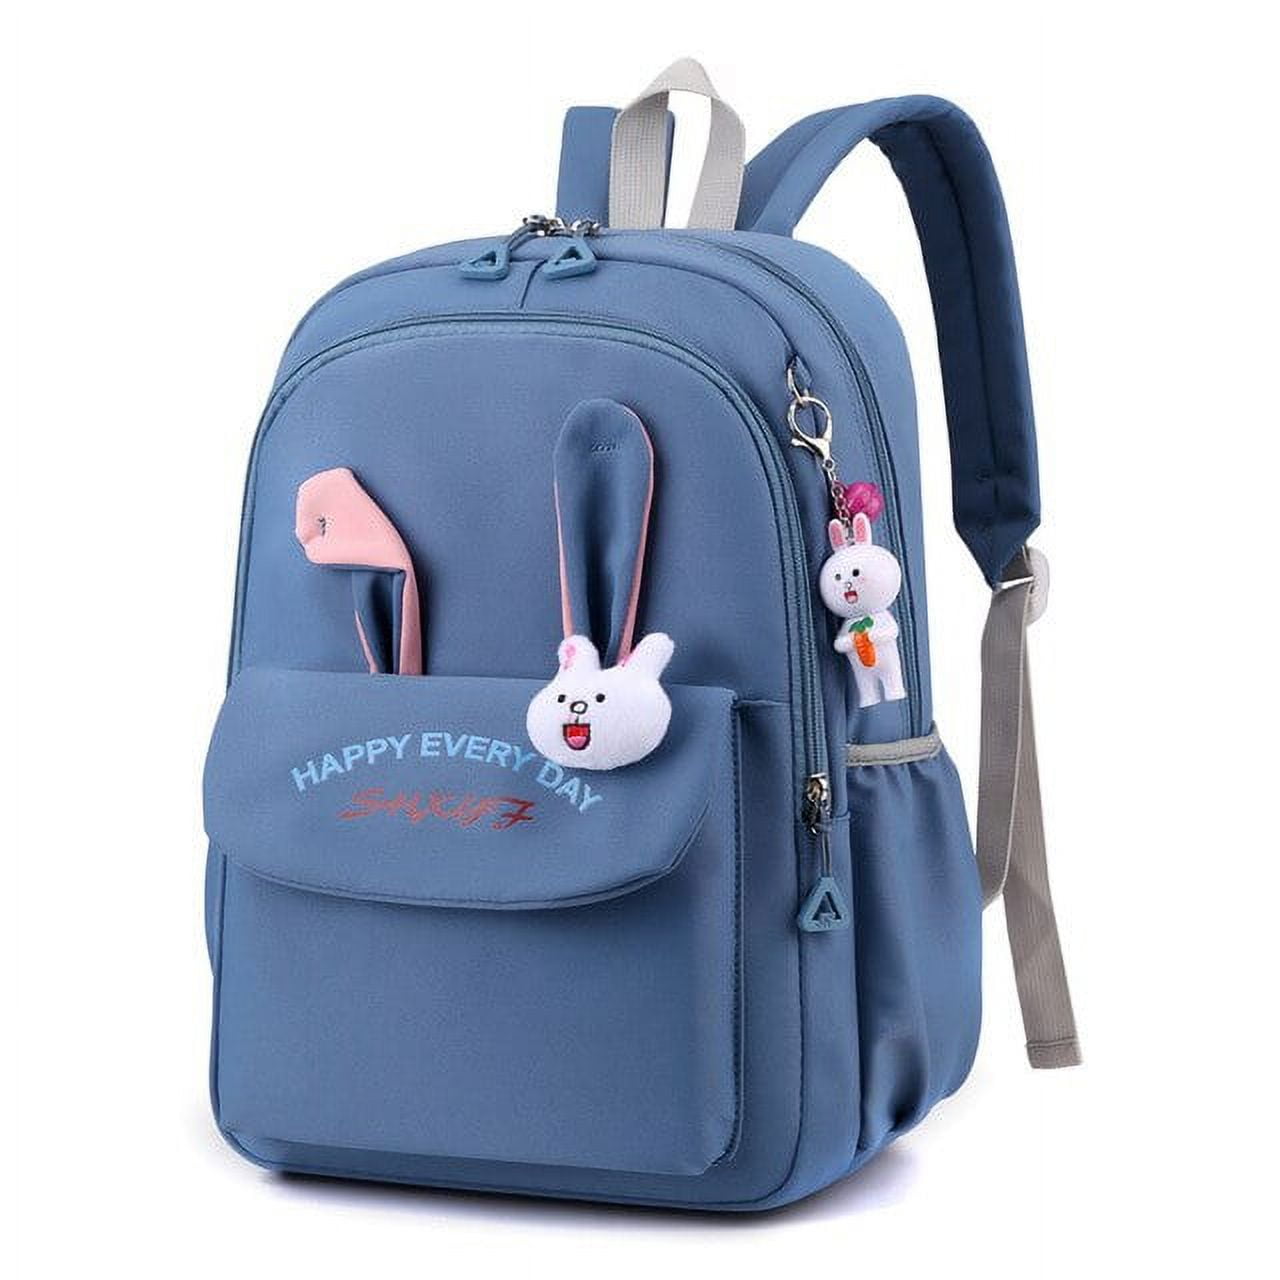 CoCopeaunts Children School Bags for Girls Kids Satchel Primary Orthopedic  school backpack princess Backpack schoolbag kids Mochila Infantil 